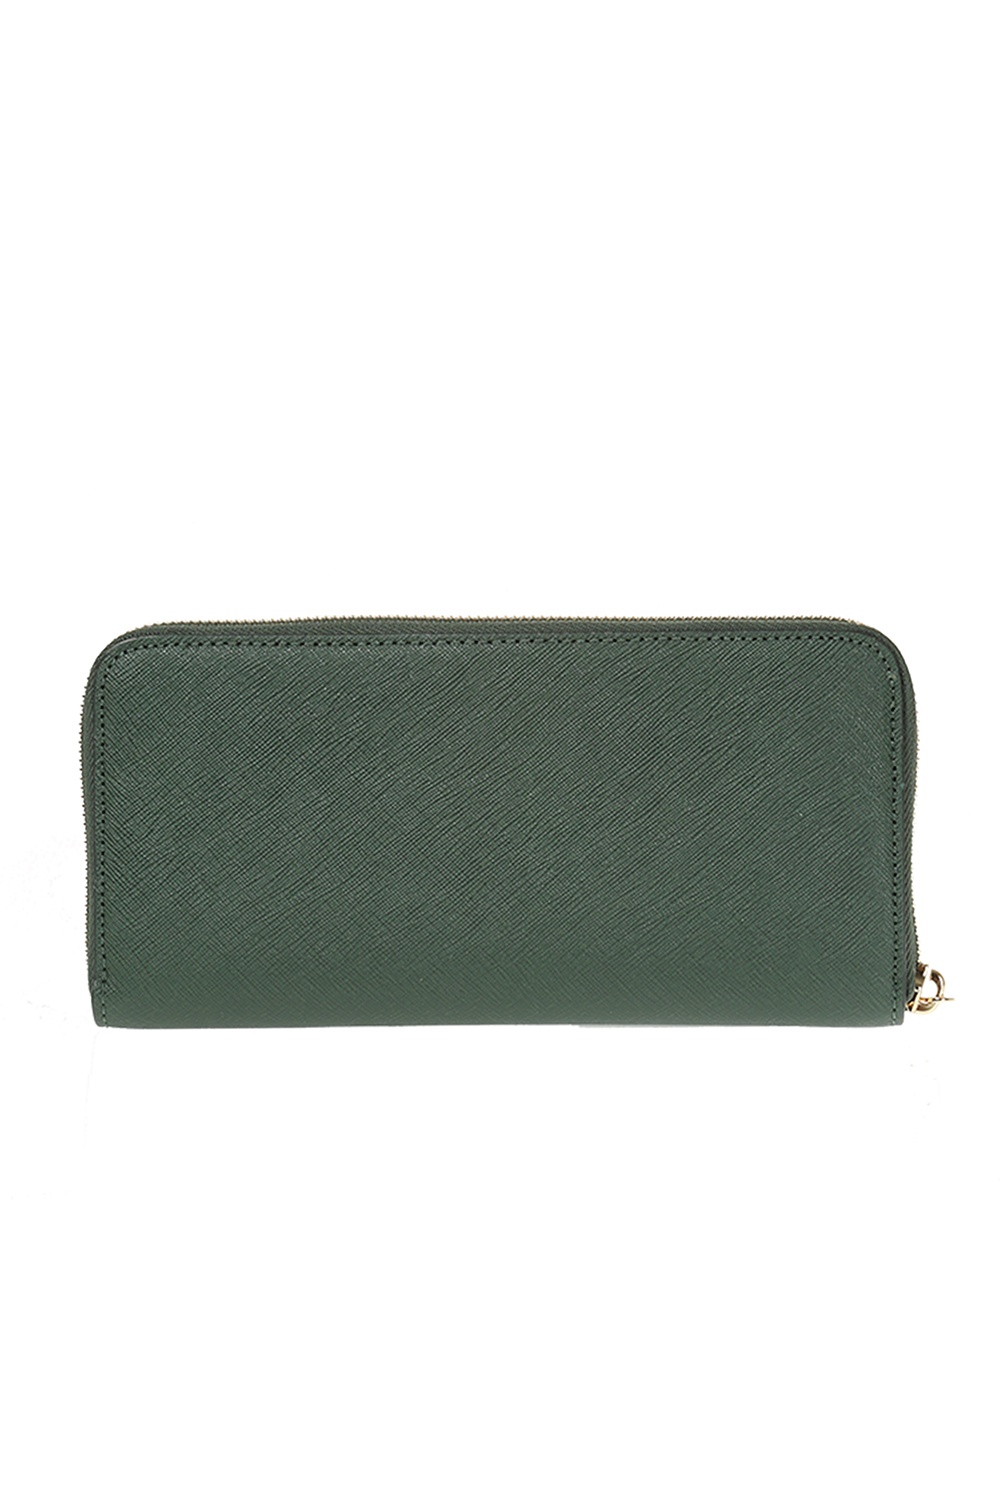 Wallets & purses Michael Kors - Saffiano leather Jet Set wallet -  32S3GTVE3L406